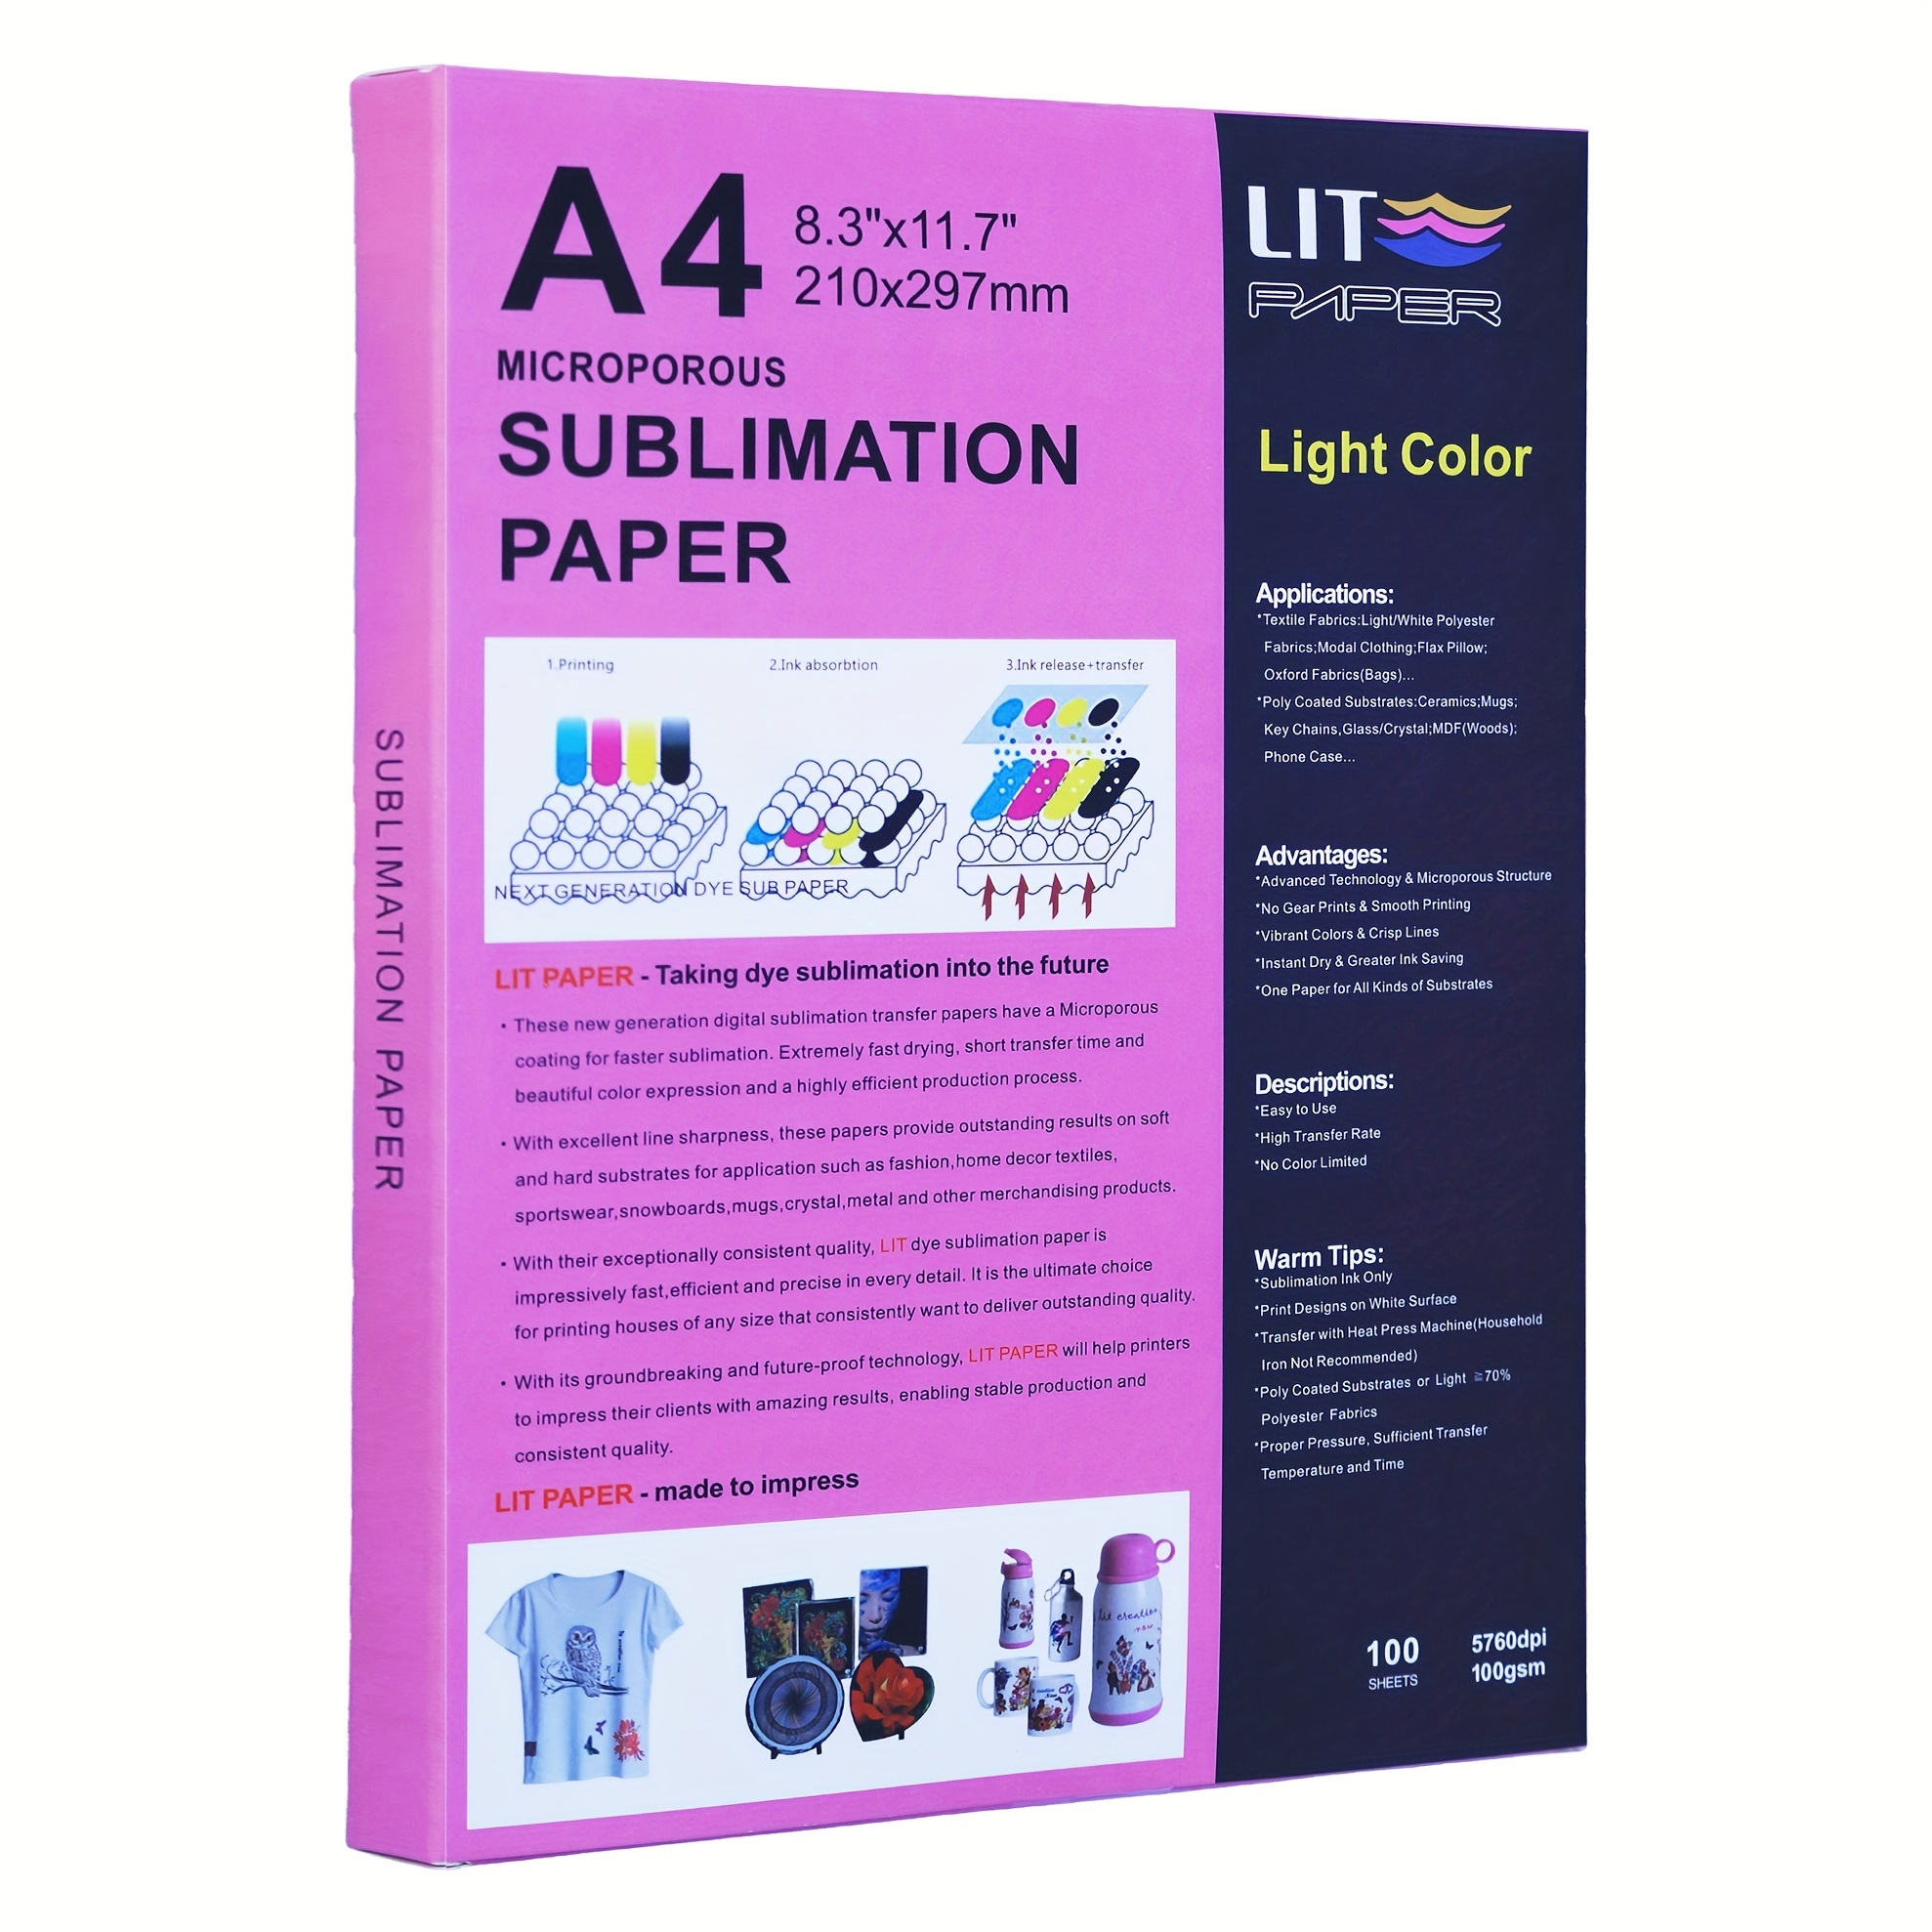 A-SUB Papel de sublimación y kit de tinta de sublimación para regalo de  Navidad de bricolaje